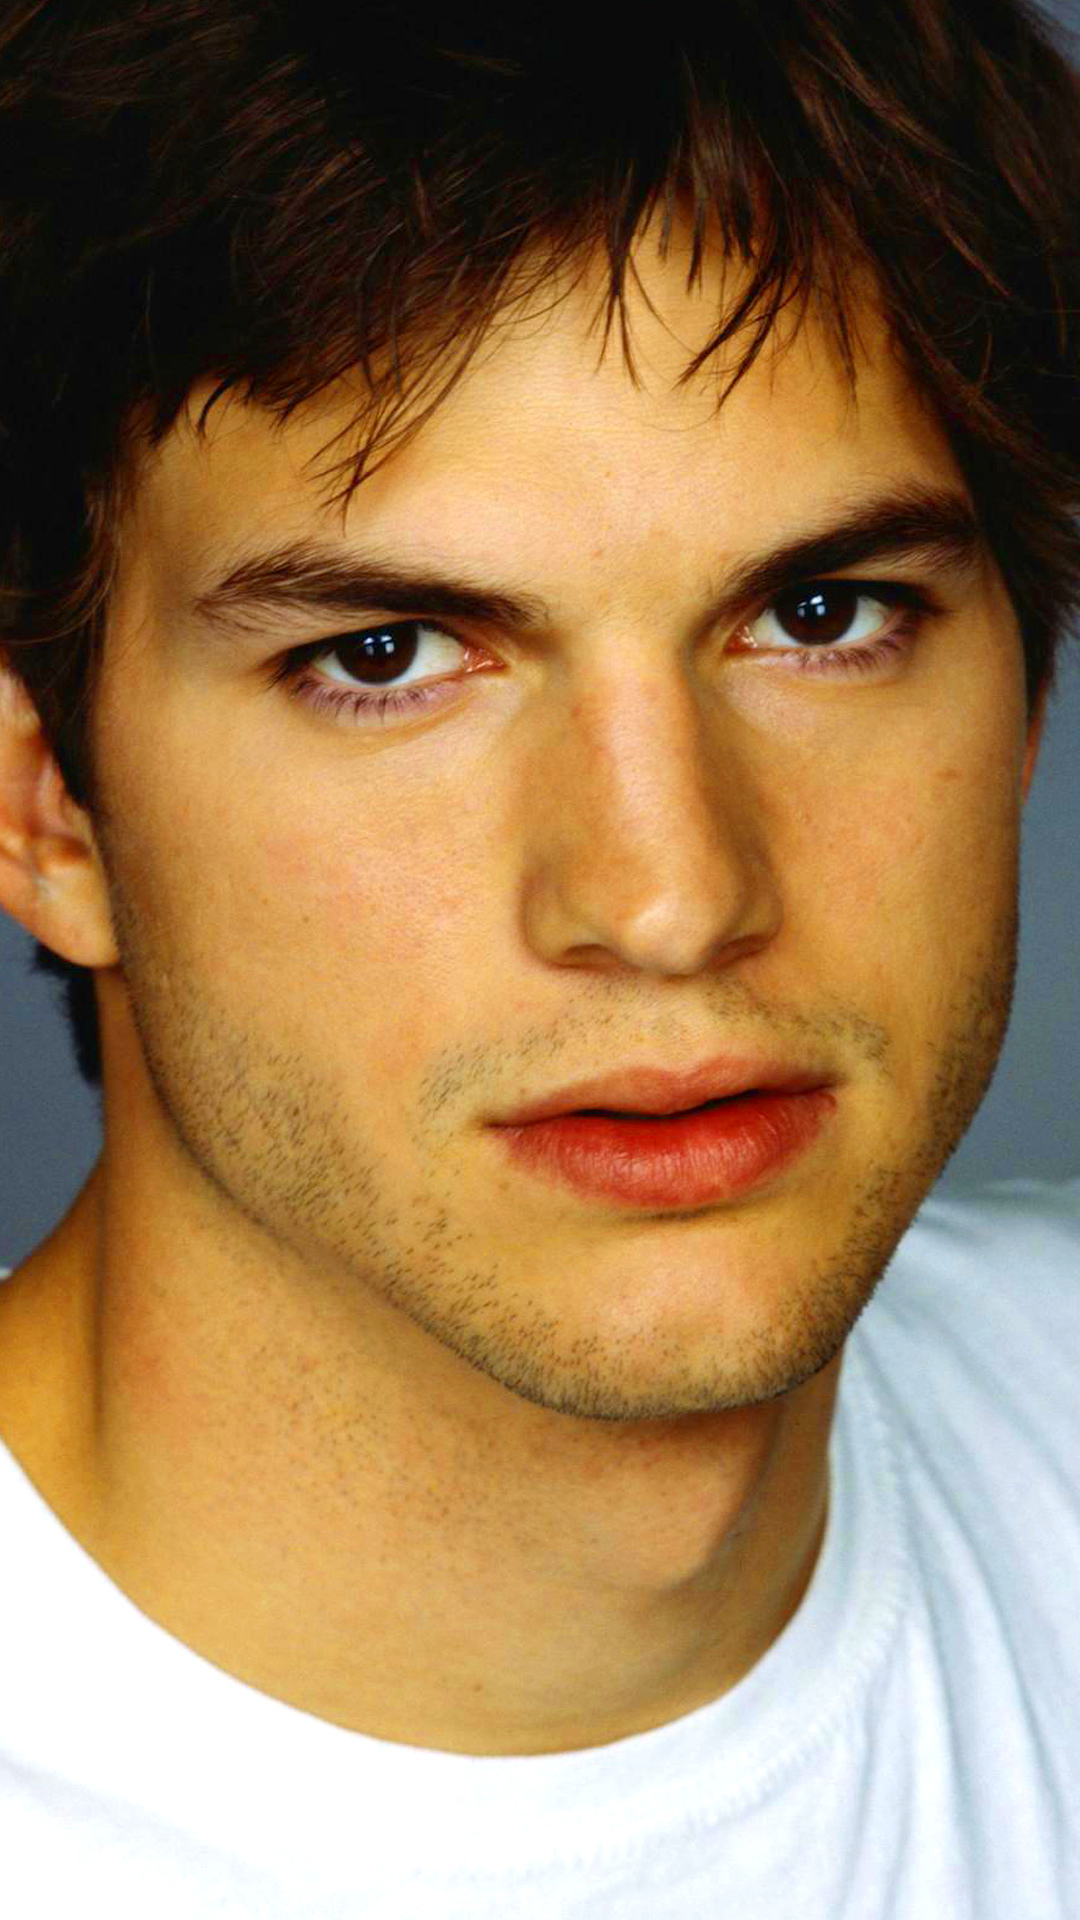 Download mobile wallpaper Celebrity, Ashton Kutcher for free.